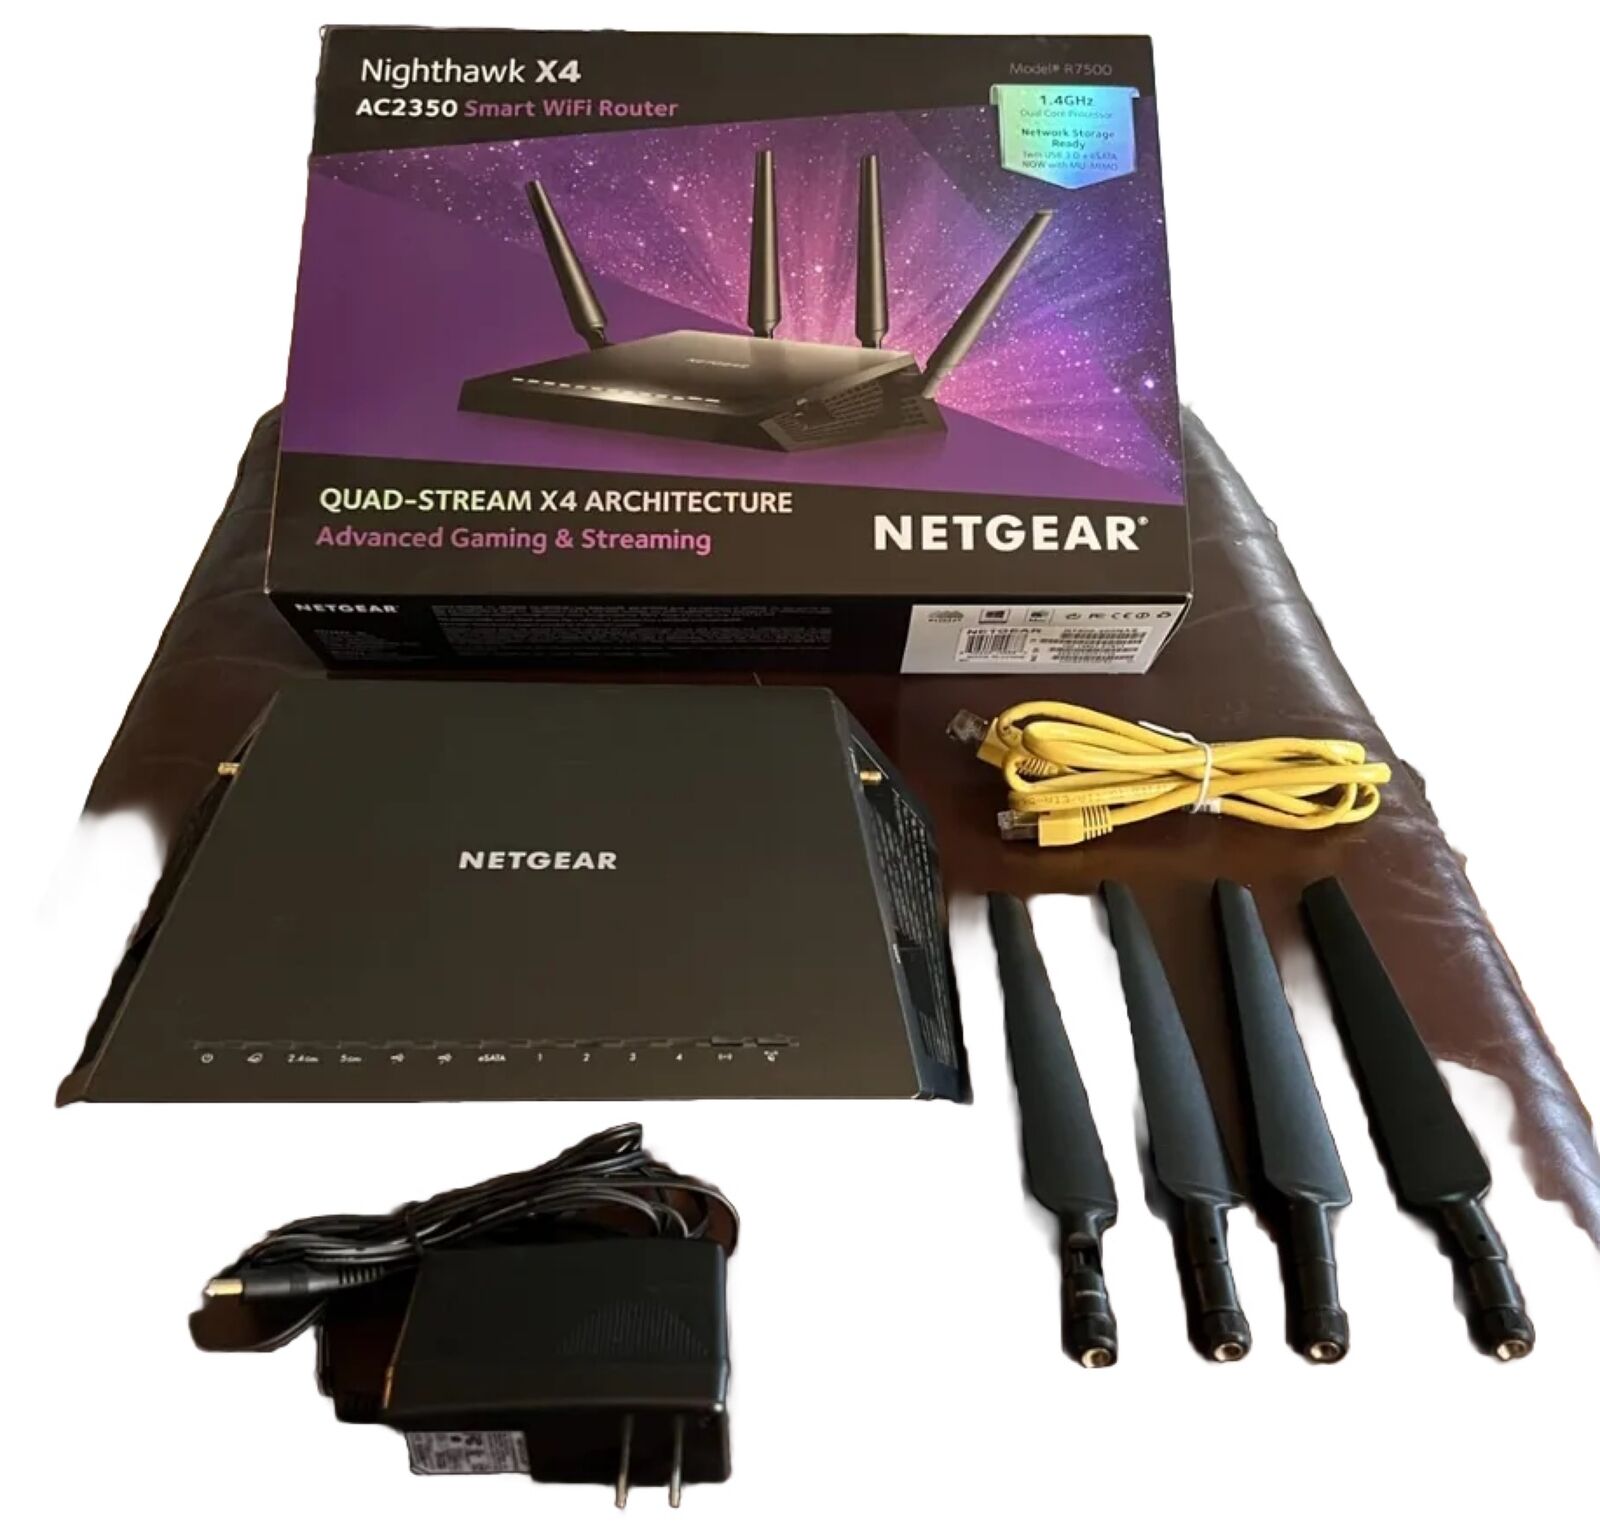 Netgear Nighthawk X4 AC2350 Smart WIFI Router Model R7500 – 1.4 GHz Dual Core